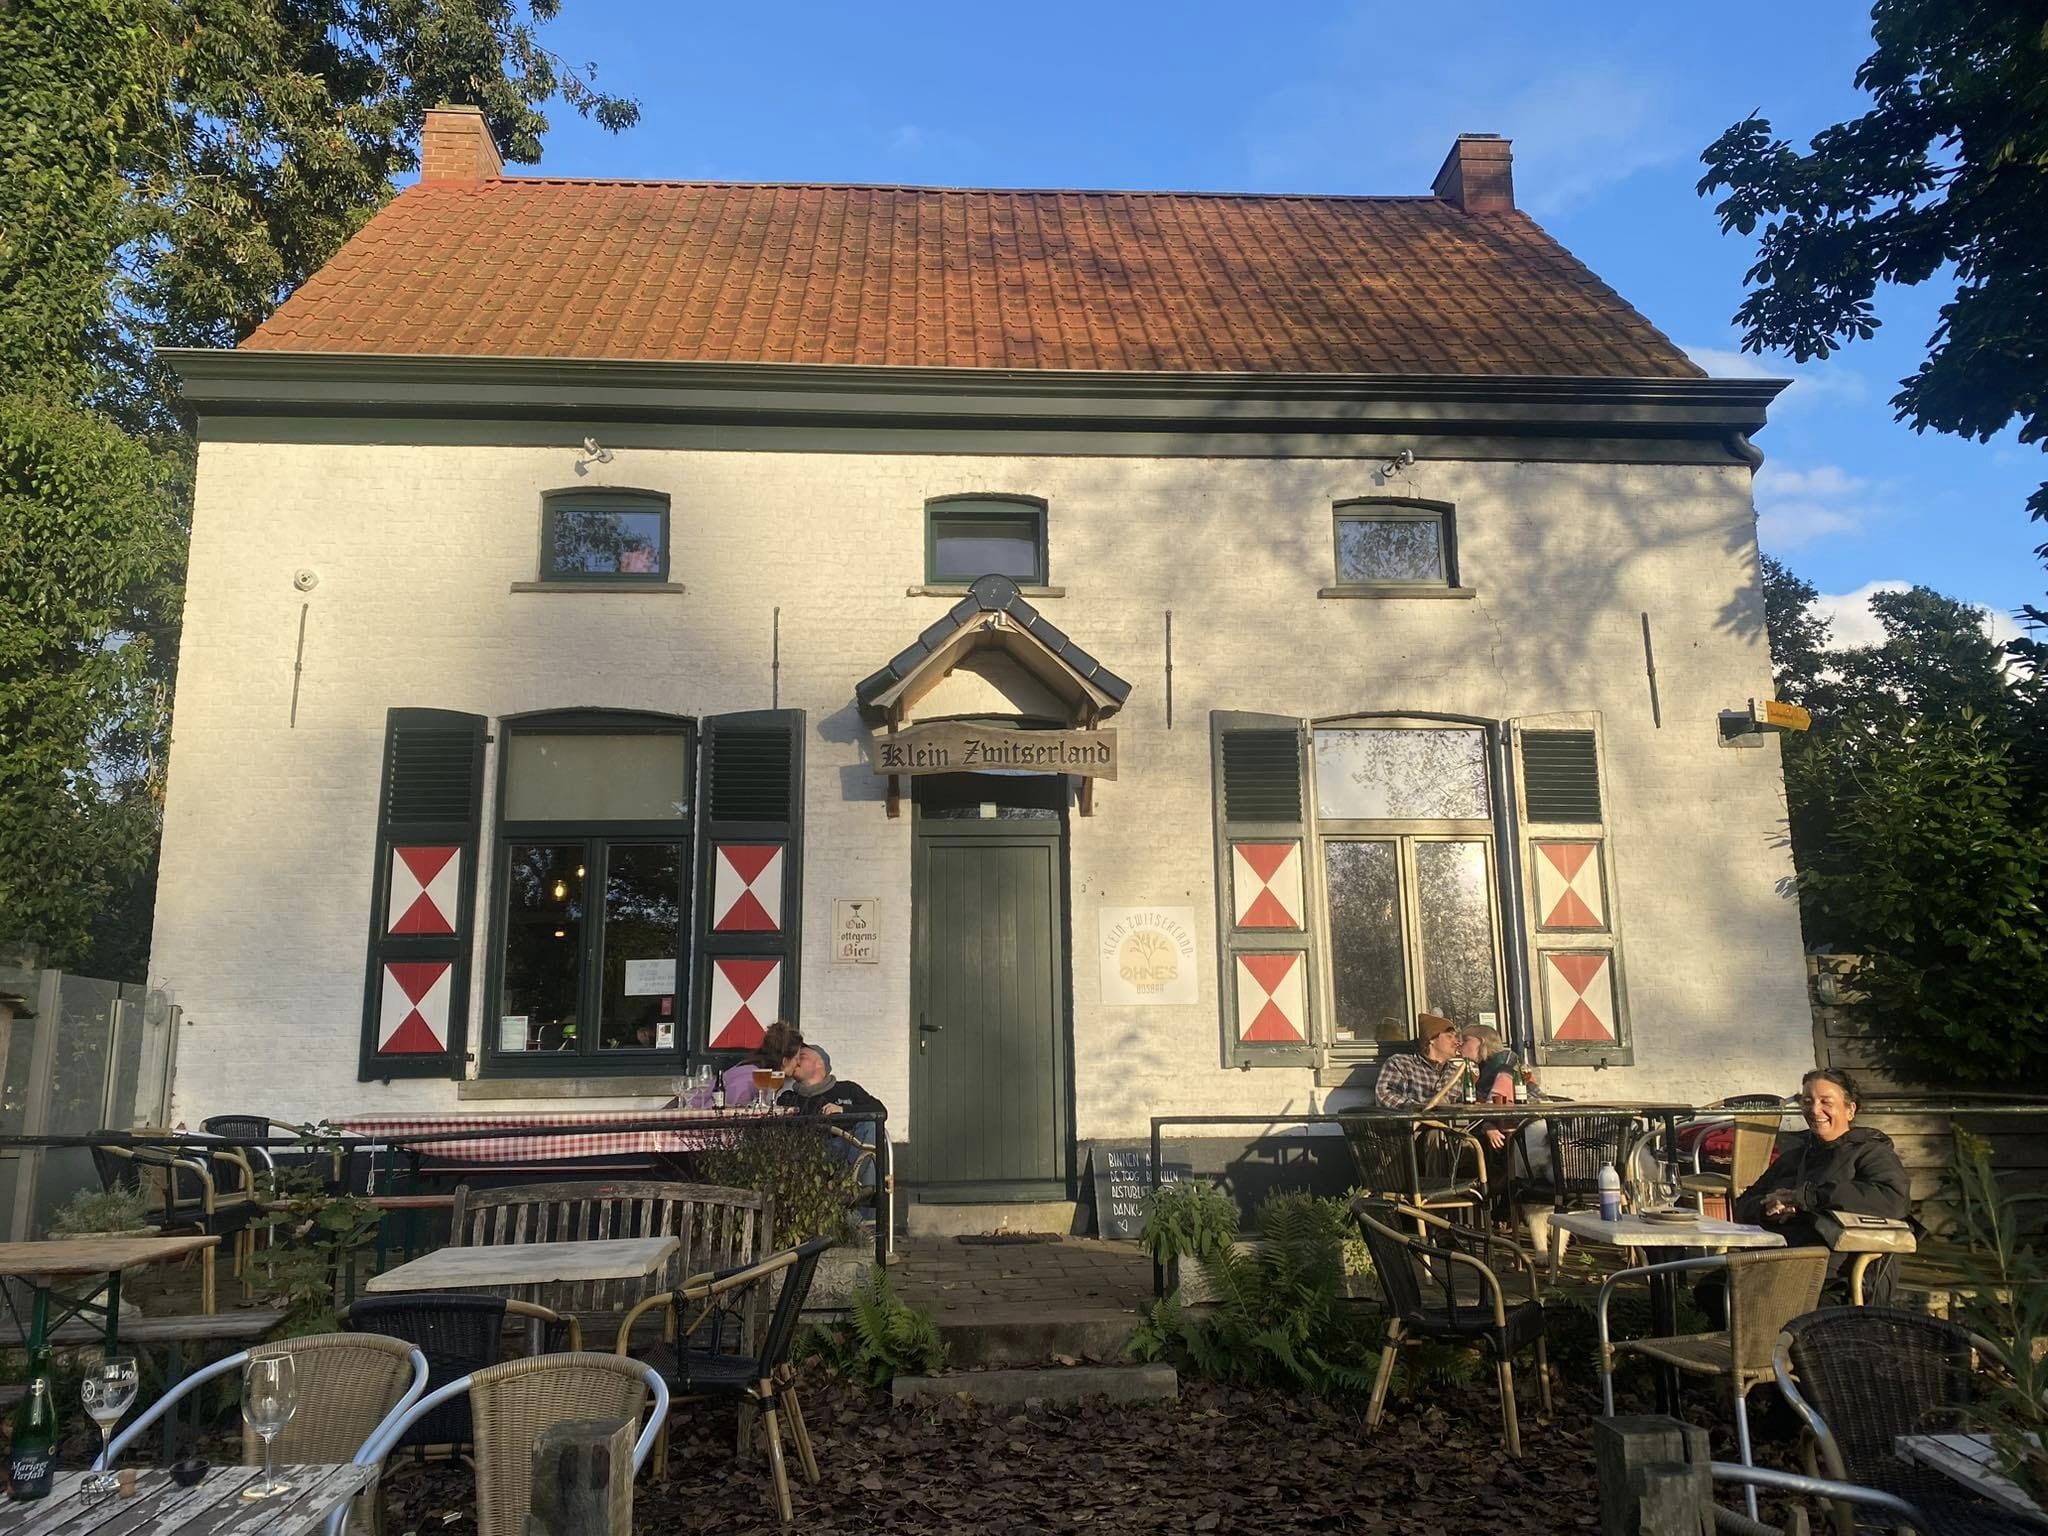 klein zwitserland café